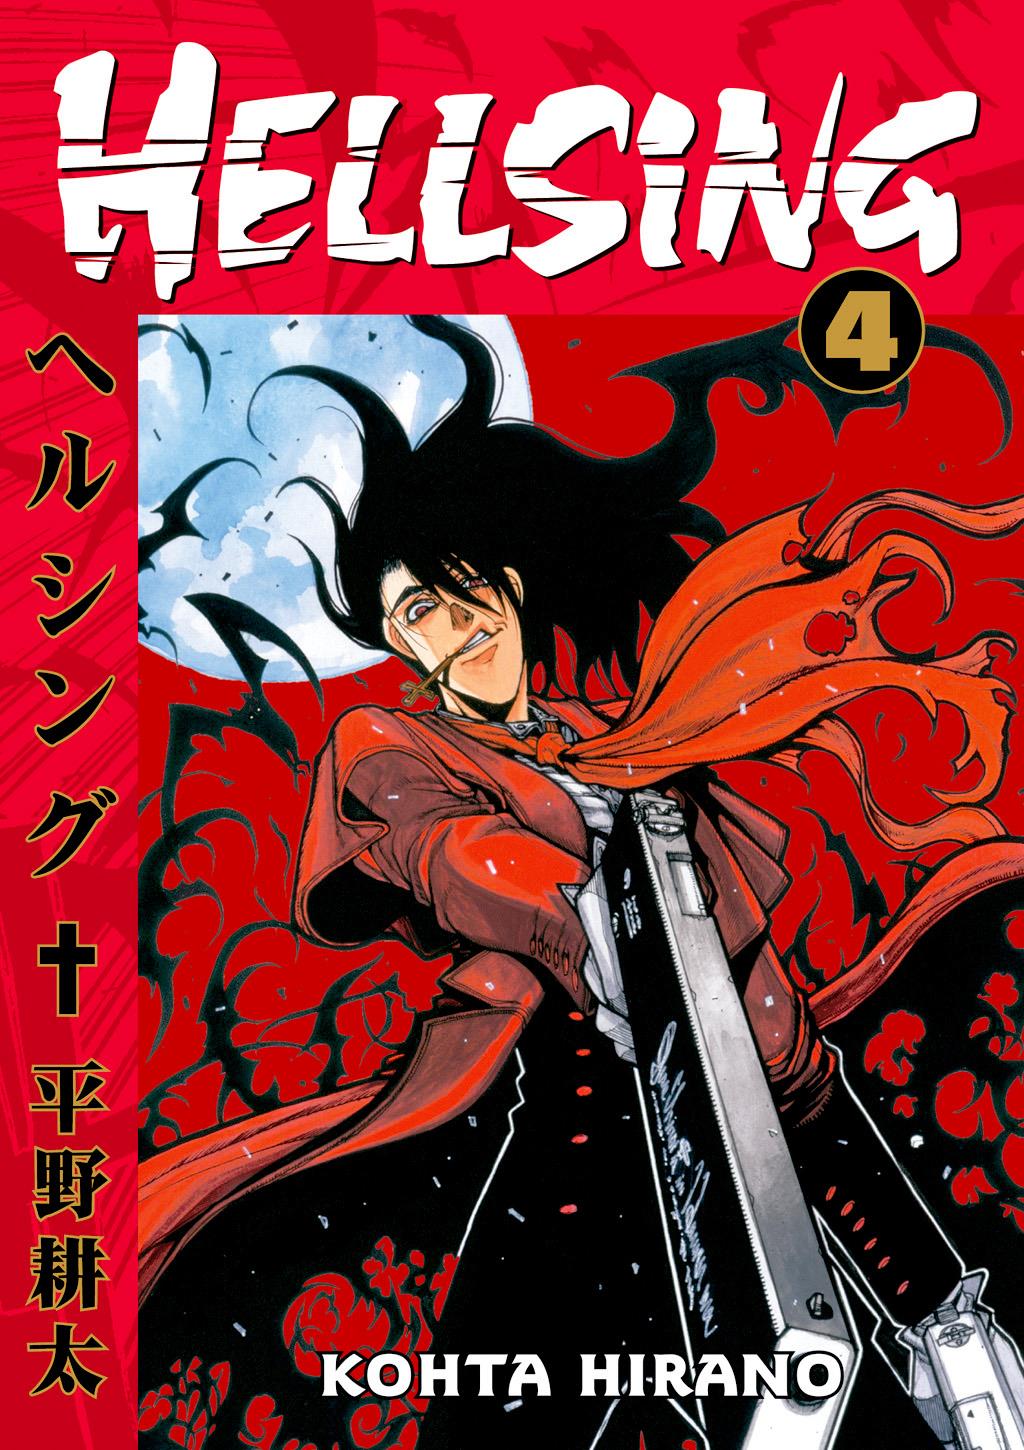 Hellsing: Volume 4 | Hellsing Wiki | Fandom